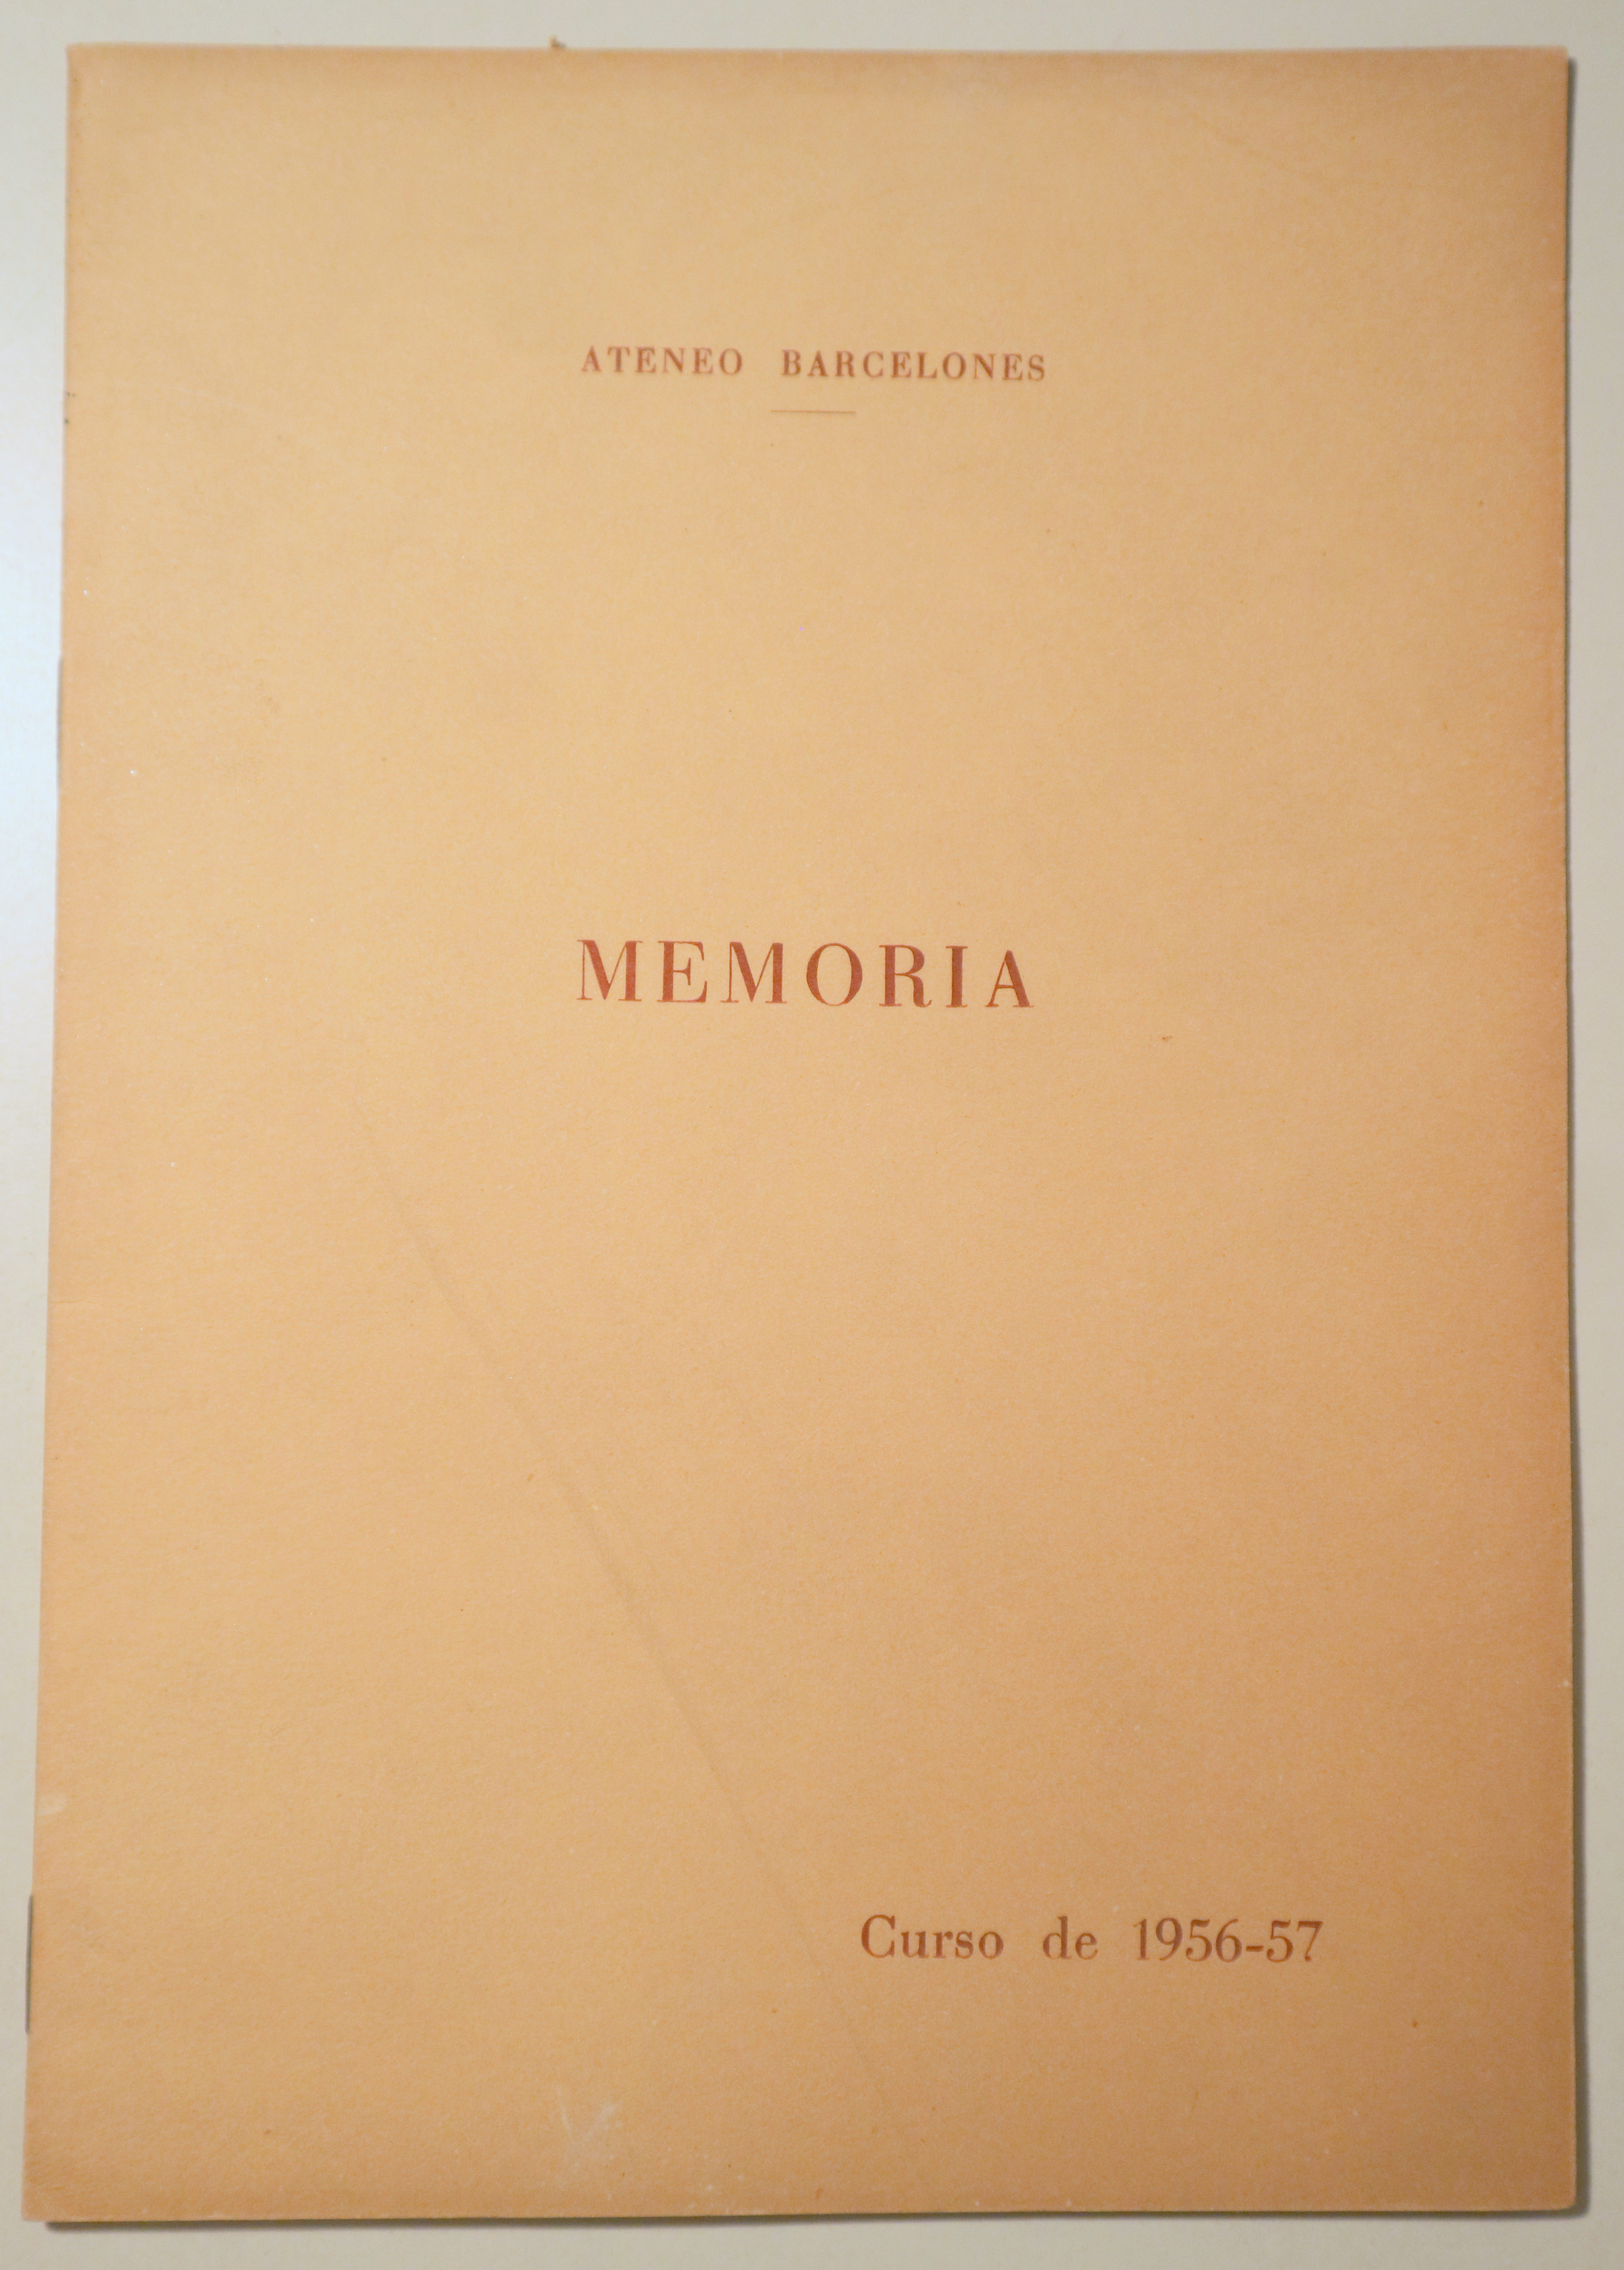 ATENEO BARCELONÉS. MEMORIA. Curso 1956-57 - Barcelona 1957